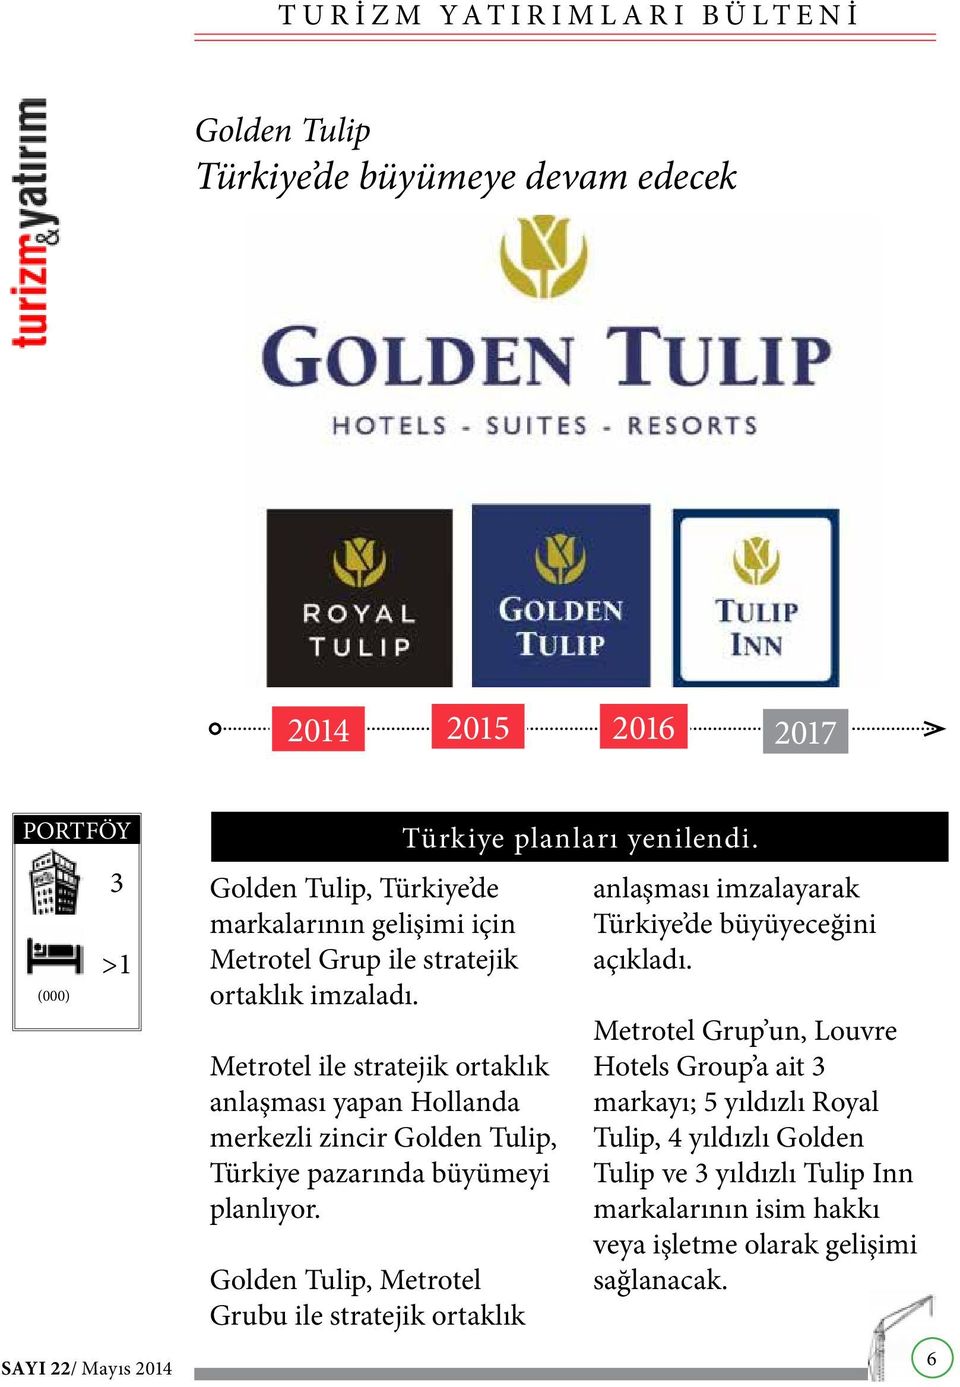 Golden Tulip, Metrotel Grubu ile stratejik ortaklık Türkiye planları yenilendi. anlaşması imzalayarak Türkiye de büyüyeceğini açıkladı.